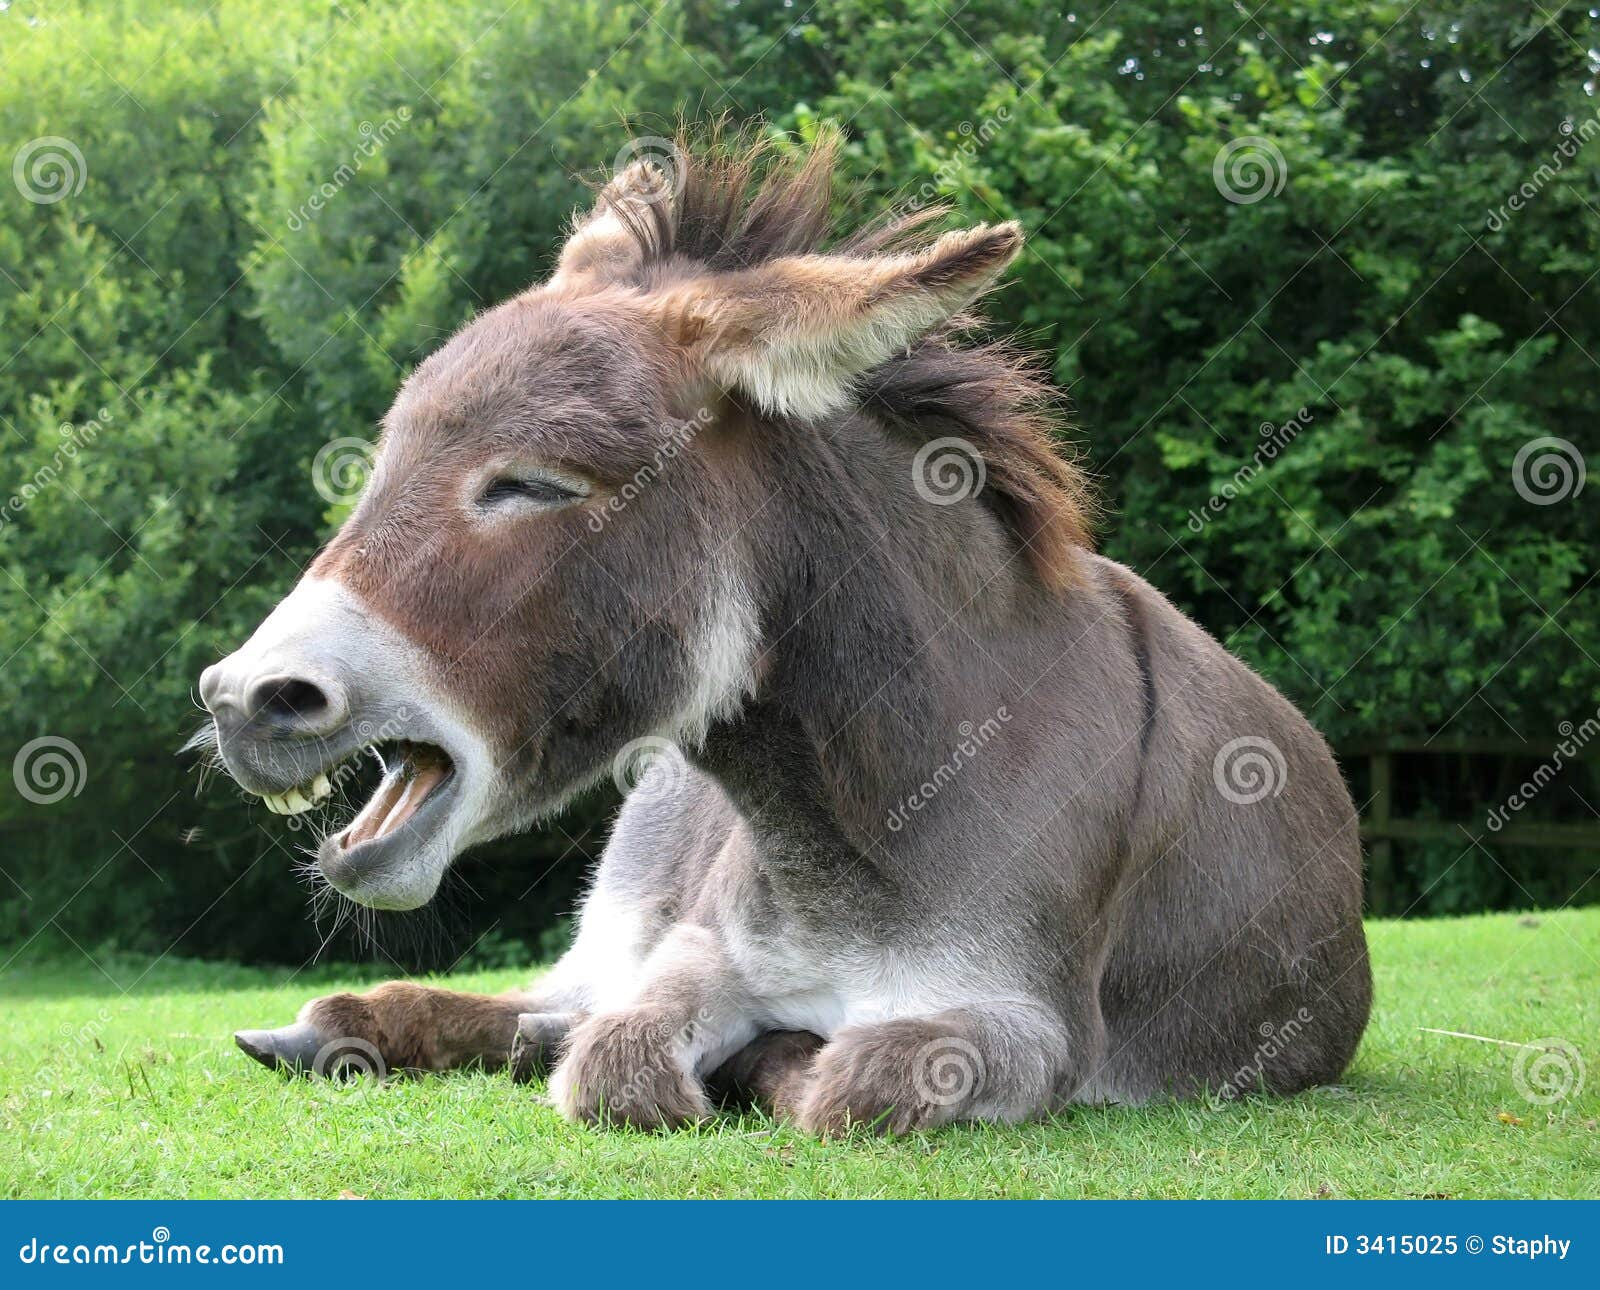 Laughing Donkey Royalty-Free Stock Image | CartoonDealer.com #20028520